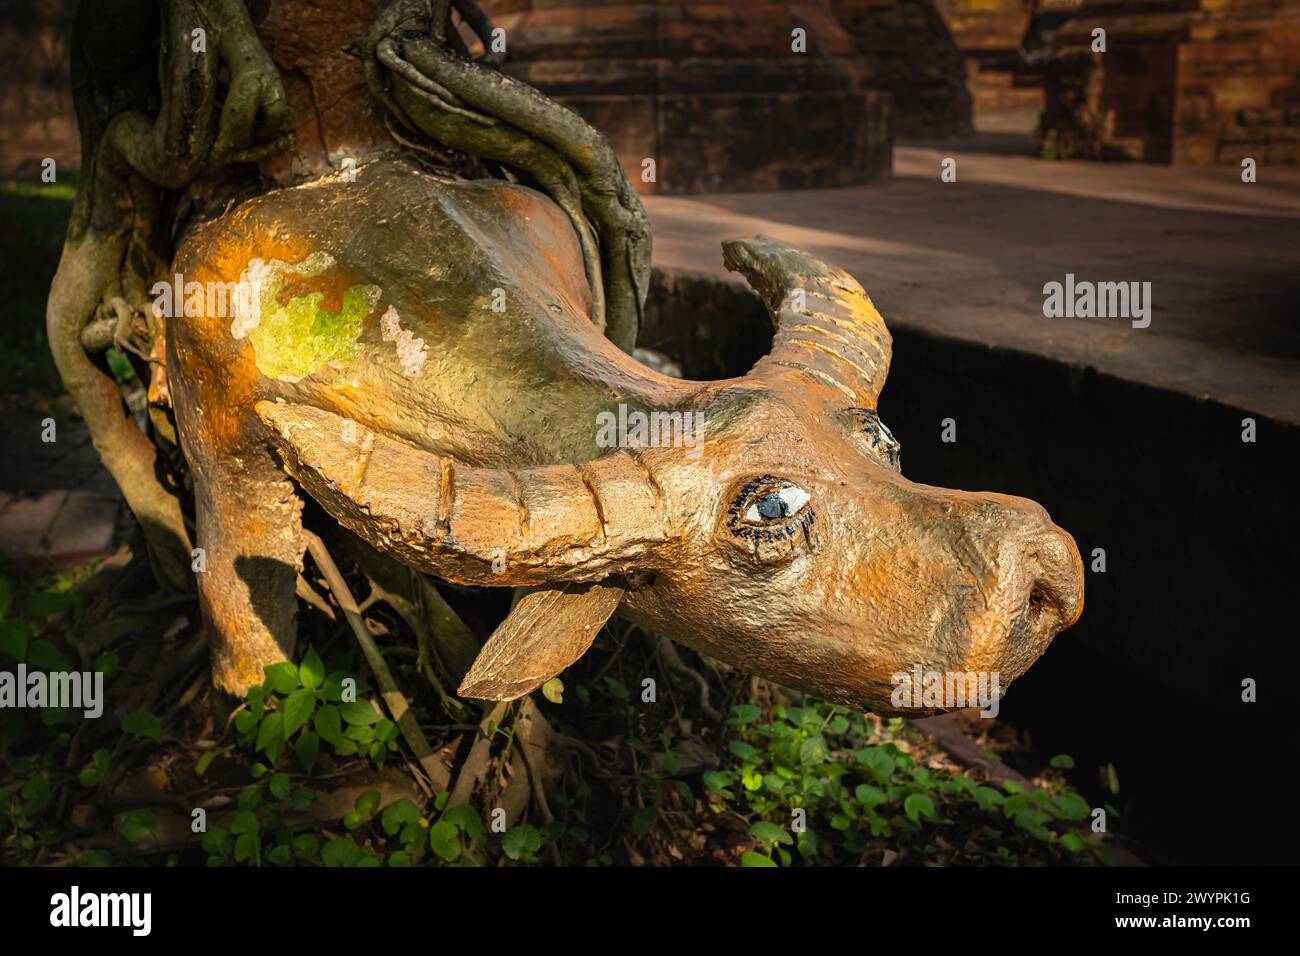 Eine Büffelstatue auf dem Boden im Garten. Büffelholzstatue auf Gras, asiatischer Garten, Dekor. Niemand, selektiver Fokus Stockfoto